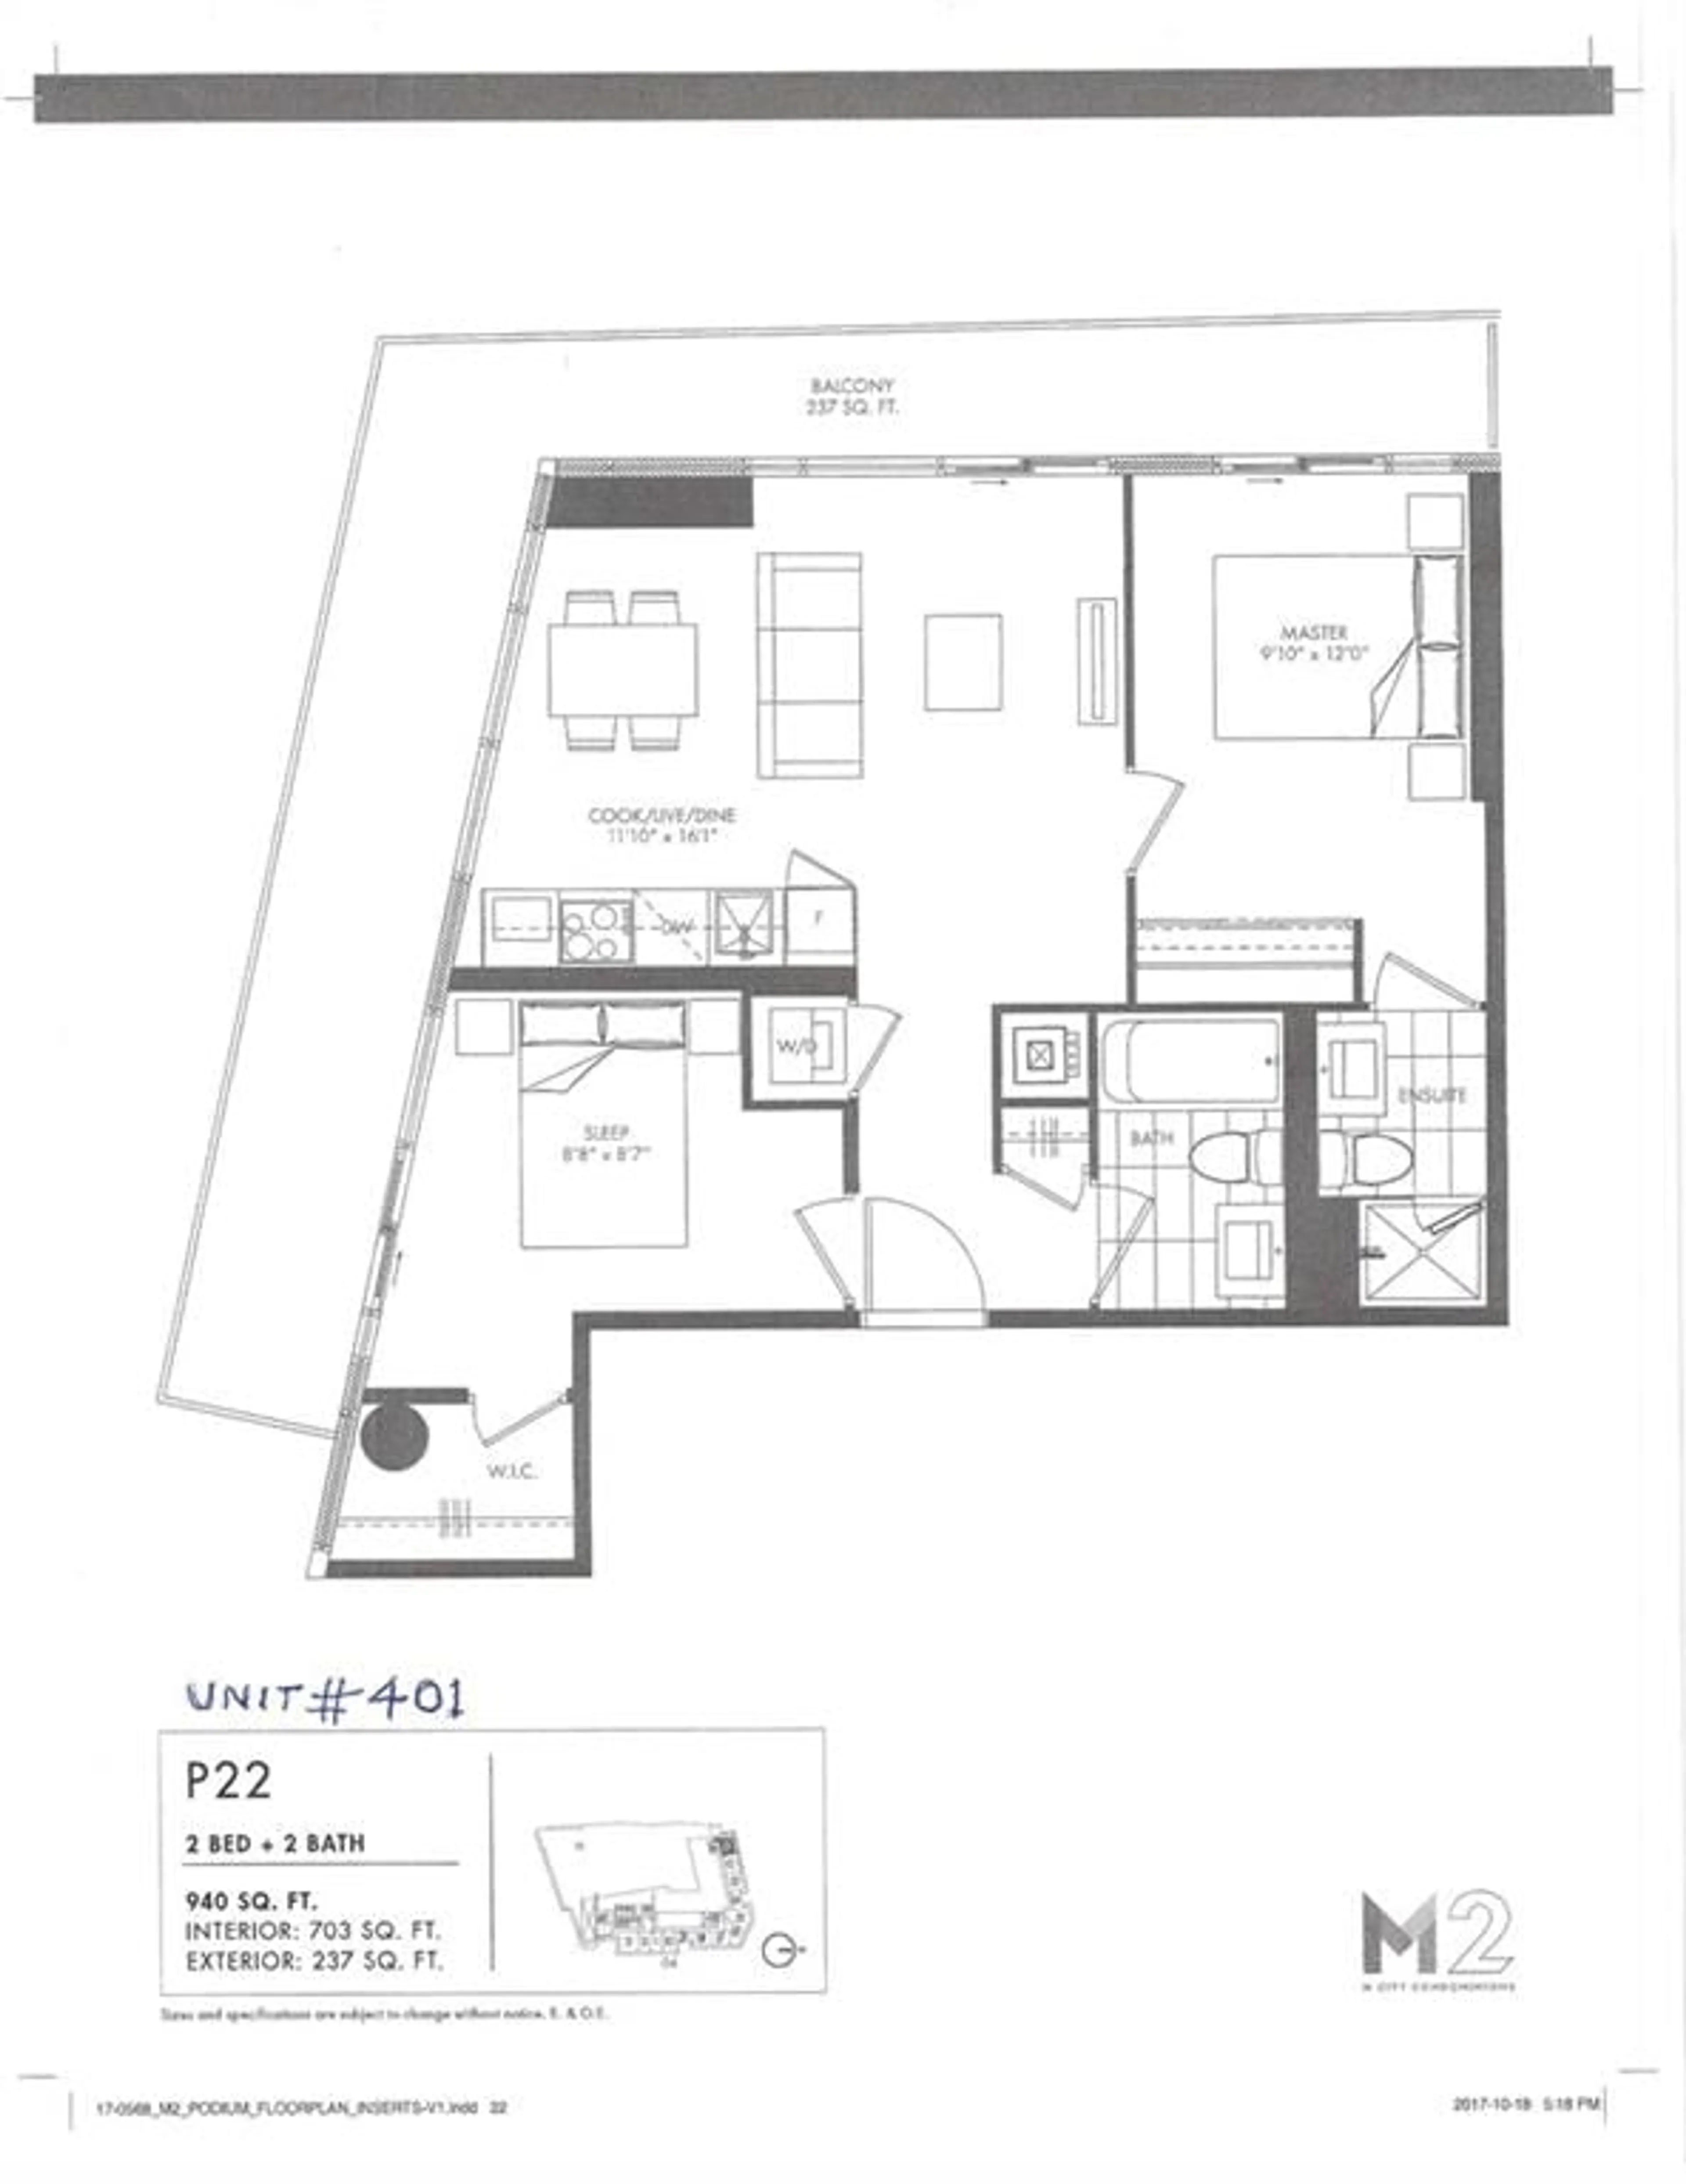 Floor plan for 3883 QUARTZ Rd #UNIT 401, Mississauga Ontario L5B 4M6